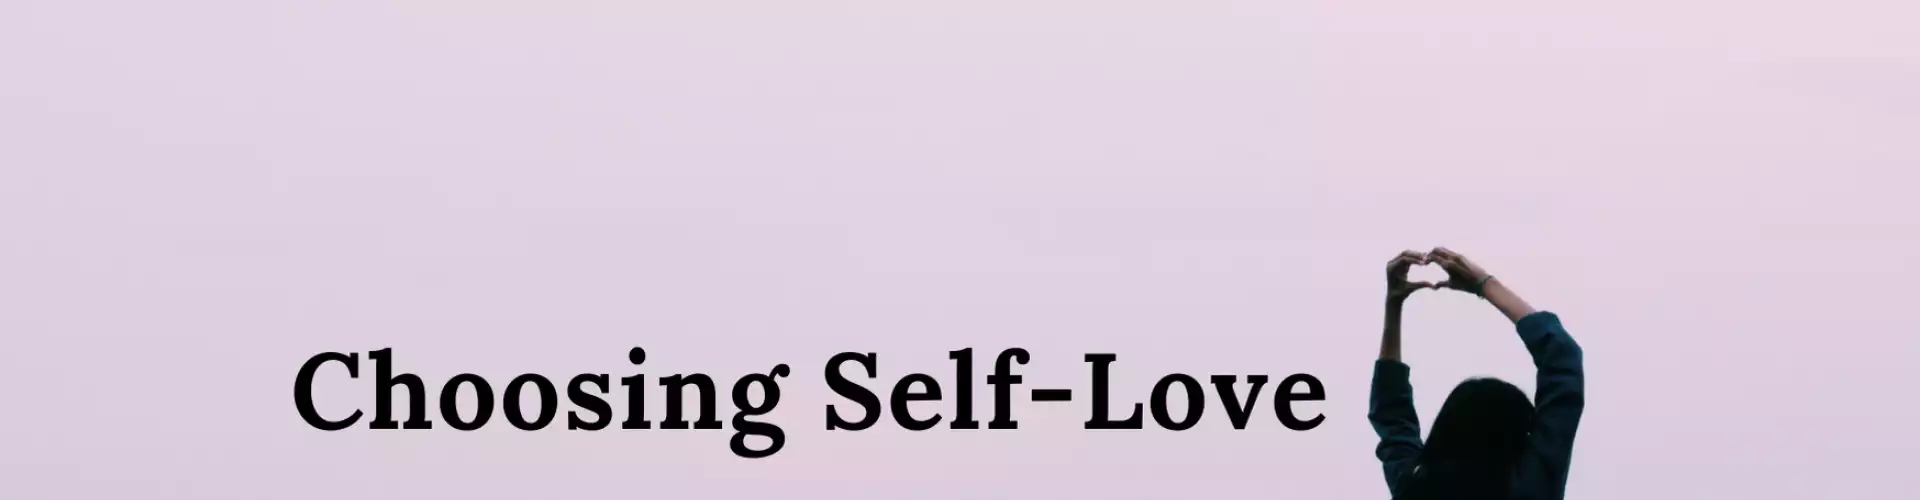 Choosing Self-Love